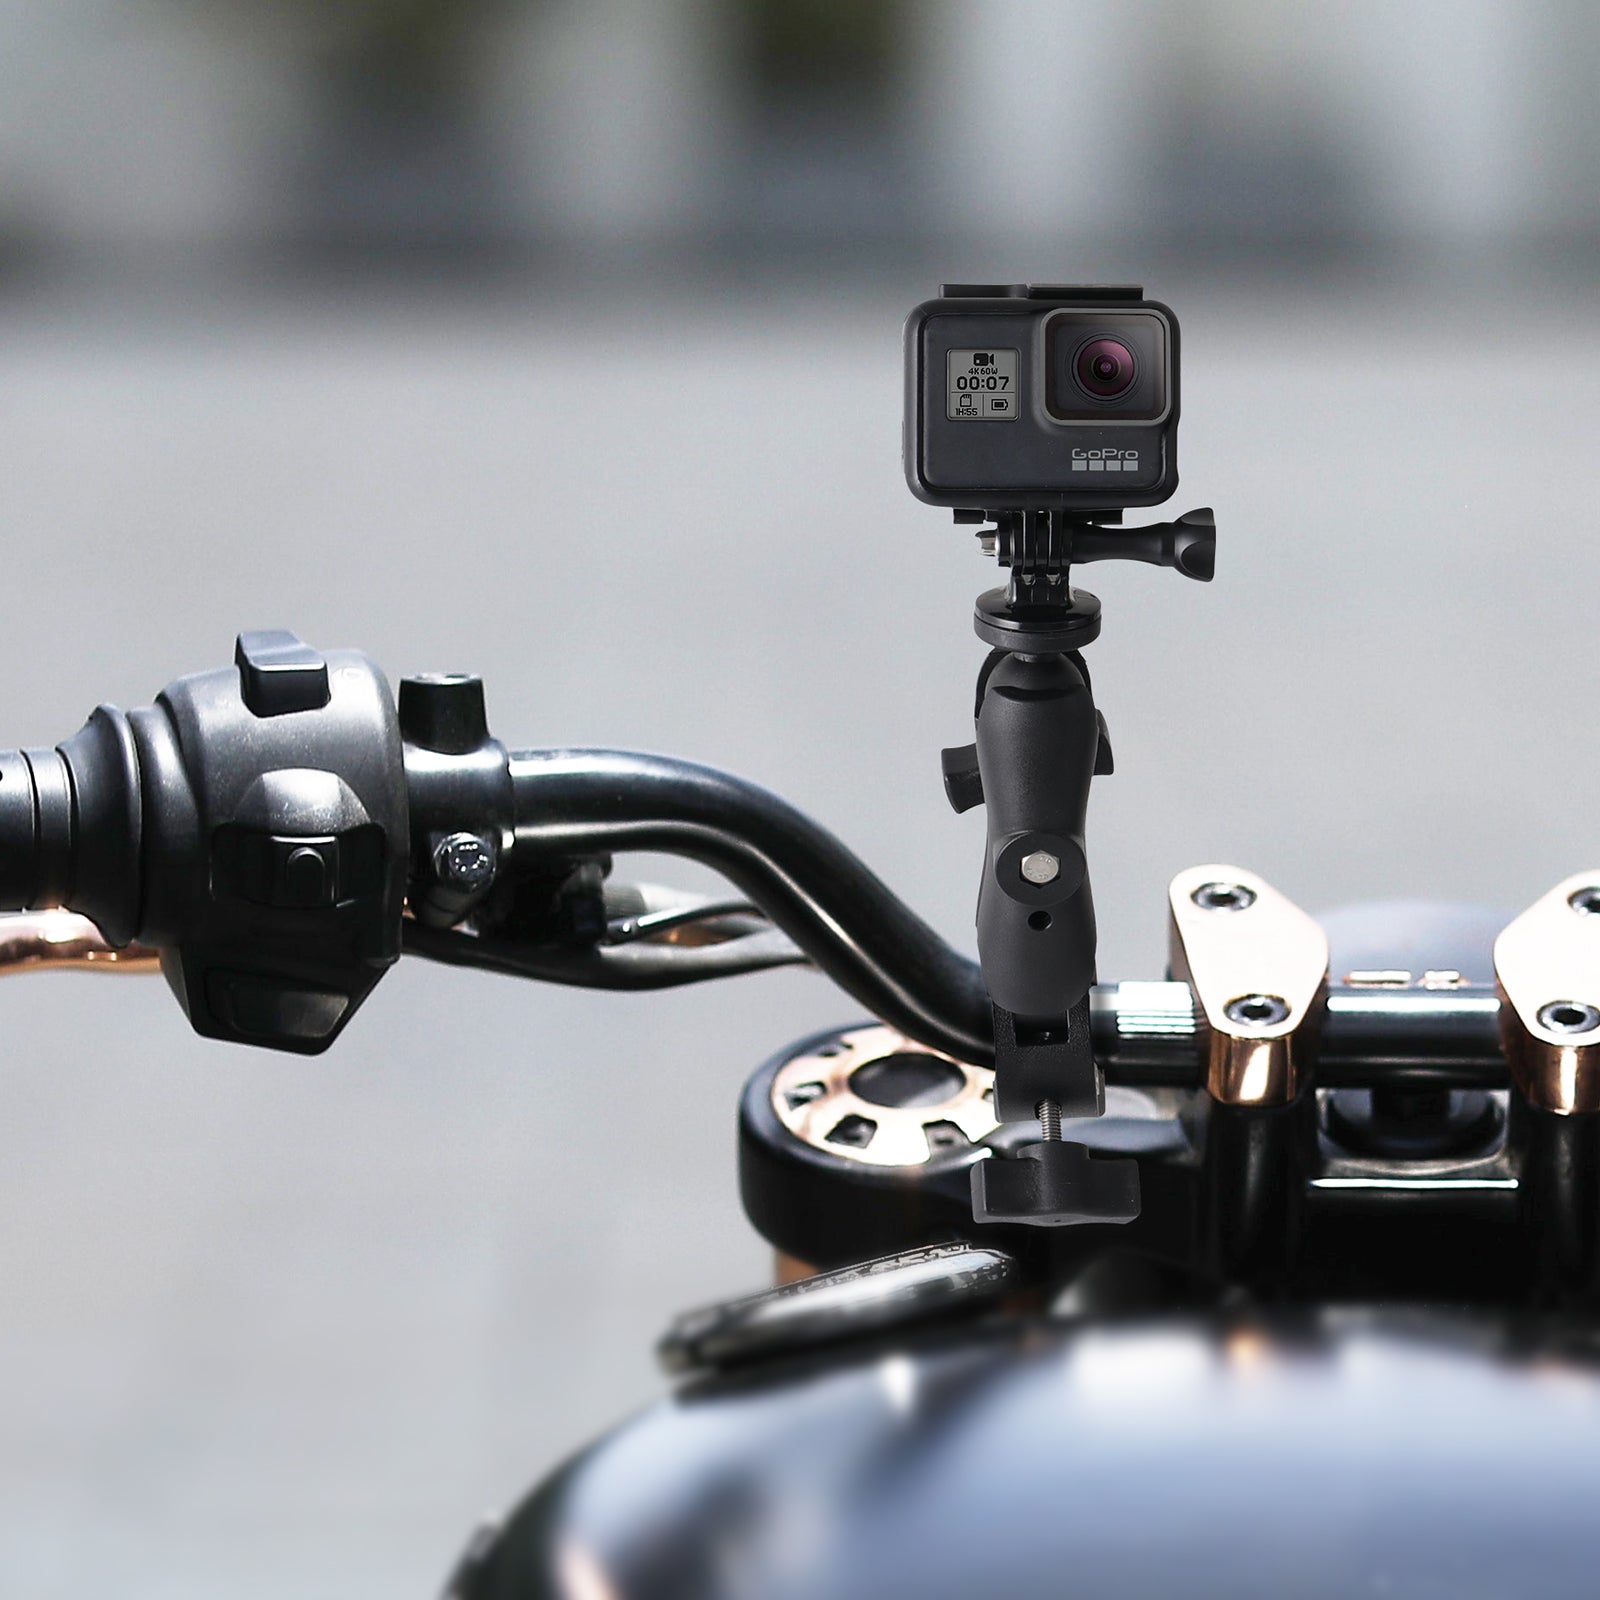 HSU Motorcycle Mount Bundle Kit for GoPro/Action Cameras